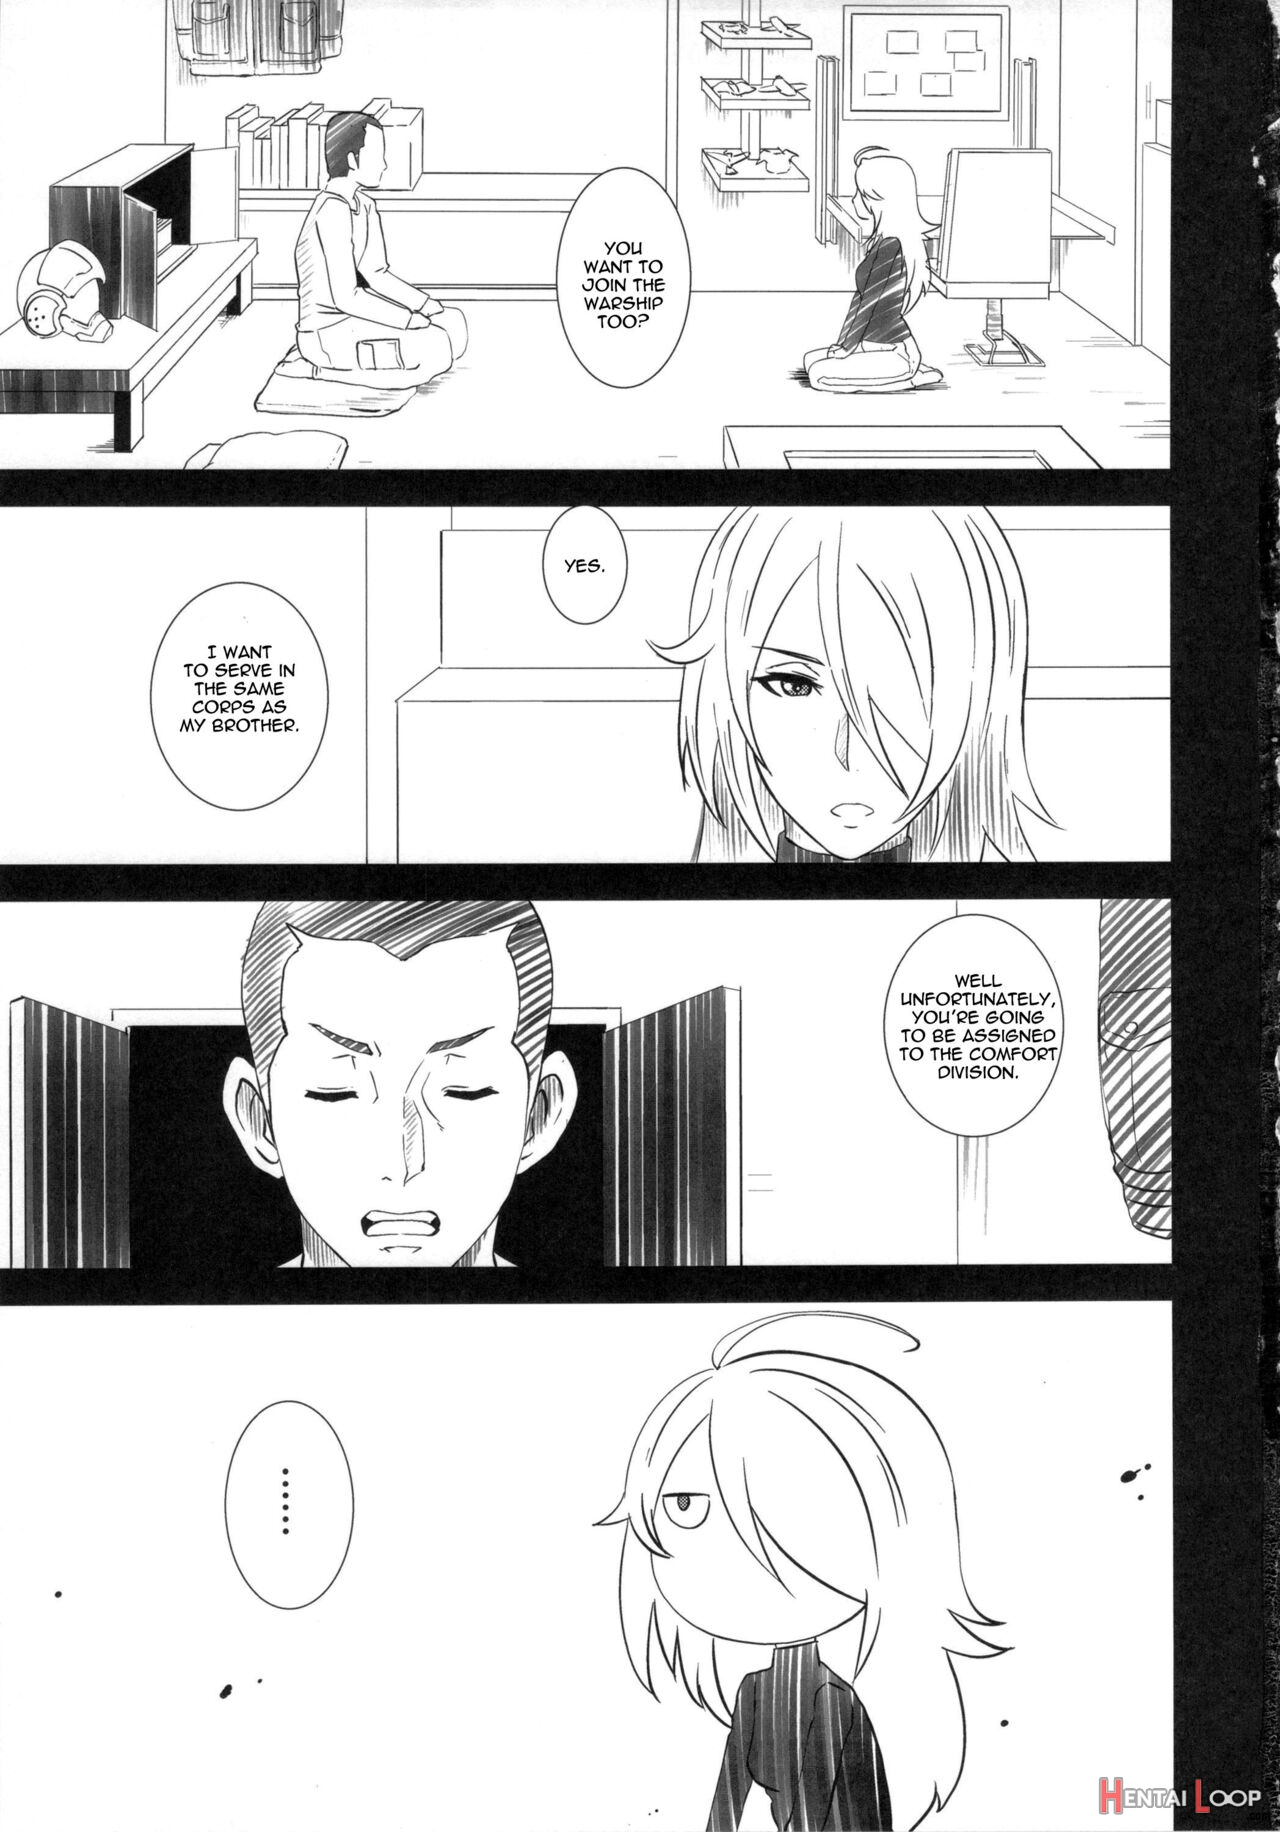 Comfort Battleship Yamato 2199 2 page 2